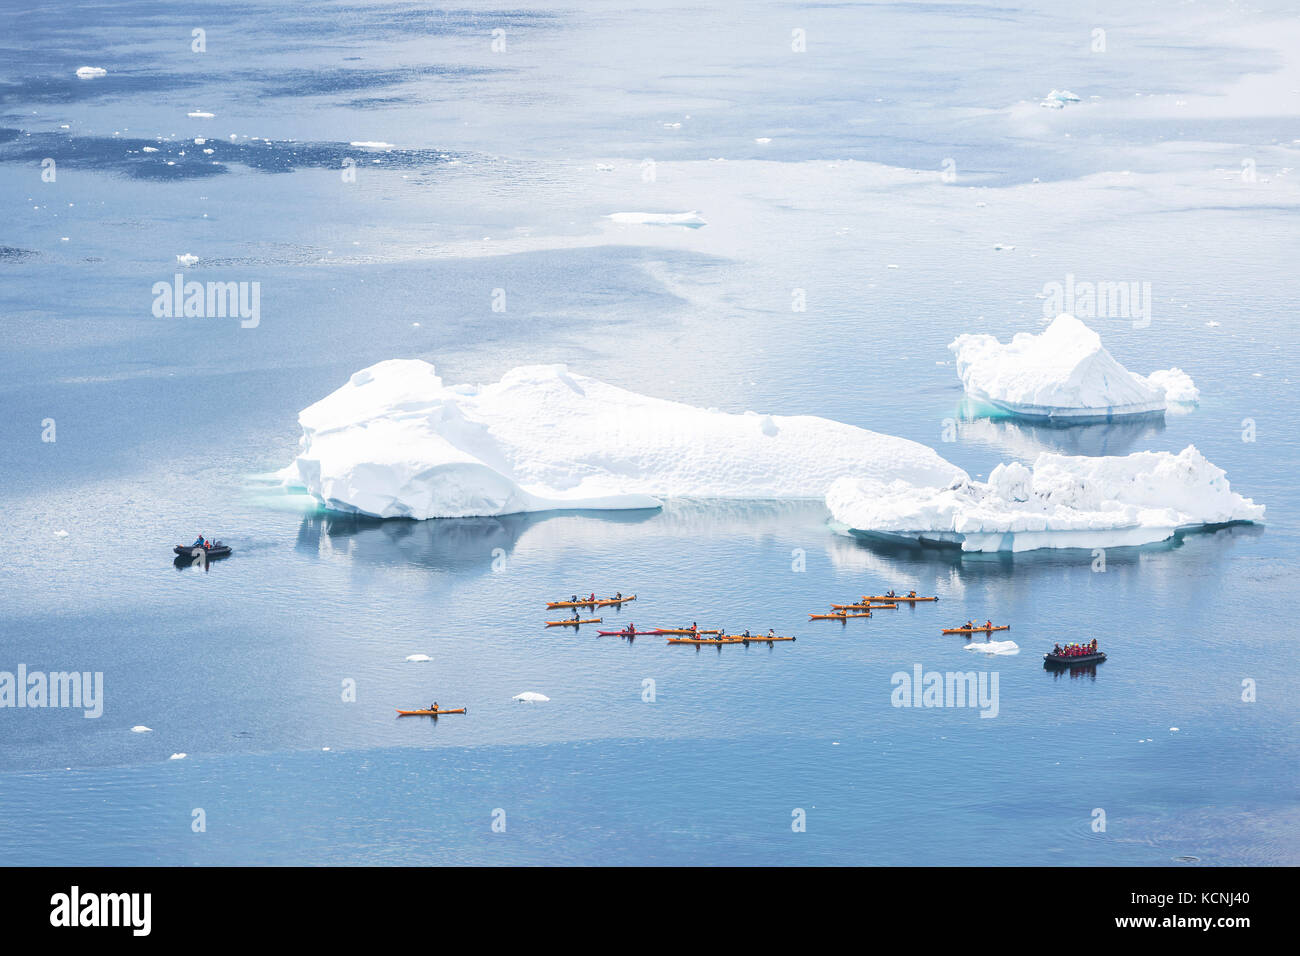 Les kayakistes et zodiaks convergent près d'un iceberg où une baleine à bosse a été vu natation, danco island, antarctic peninsula Banque D'Images